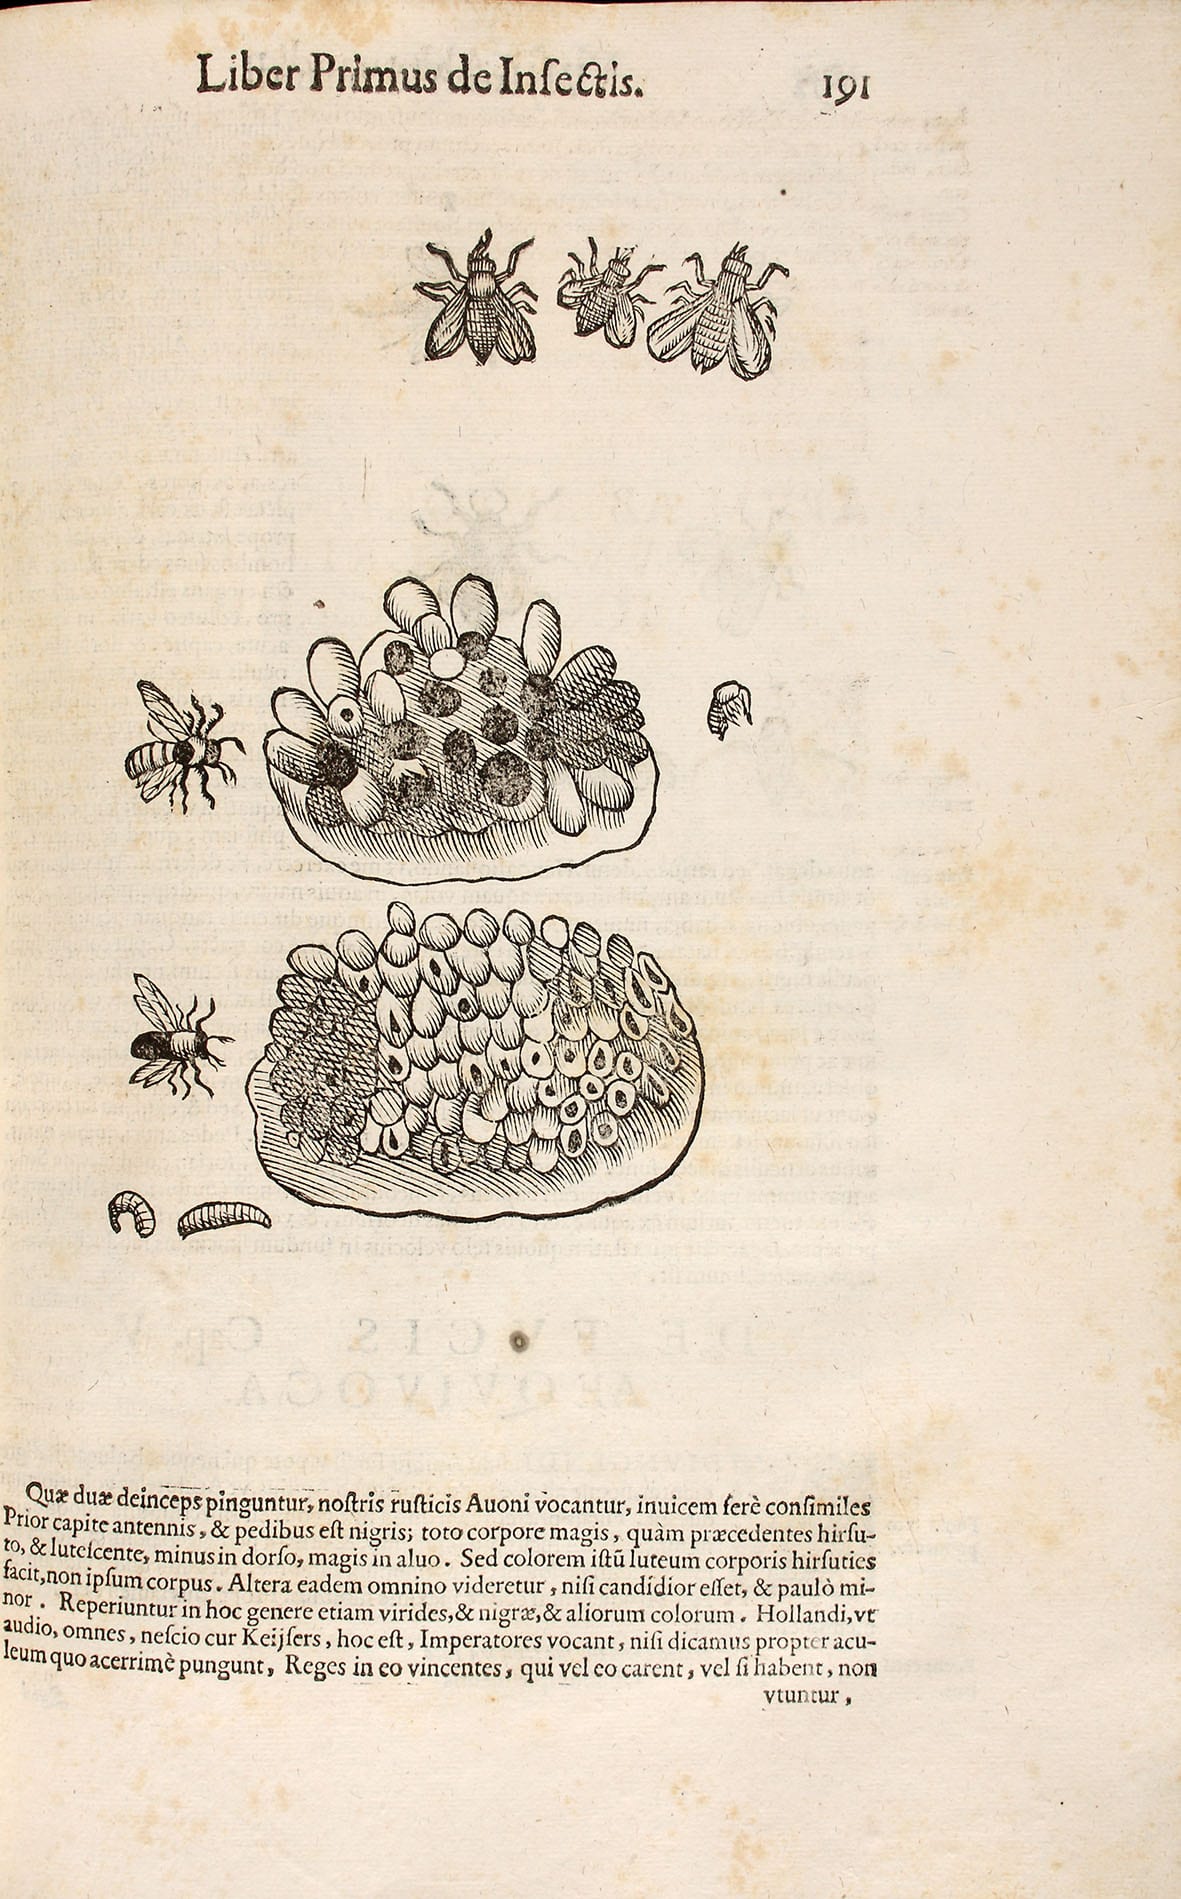 Ulisse Aldrovandi (1522-1605): De animalibus insectis, Bononia, 1602, Abbildung einer Biene